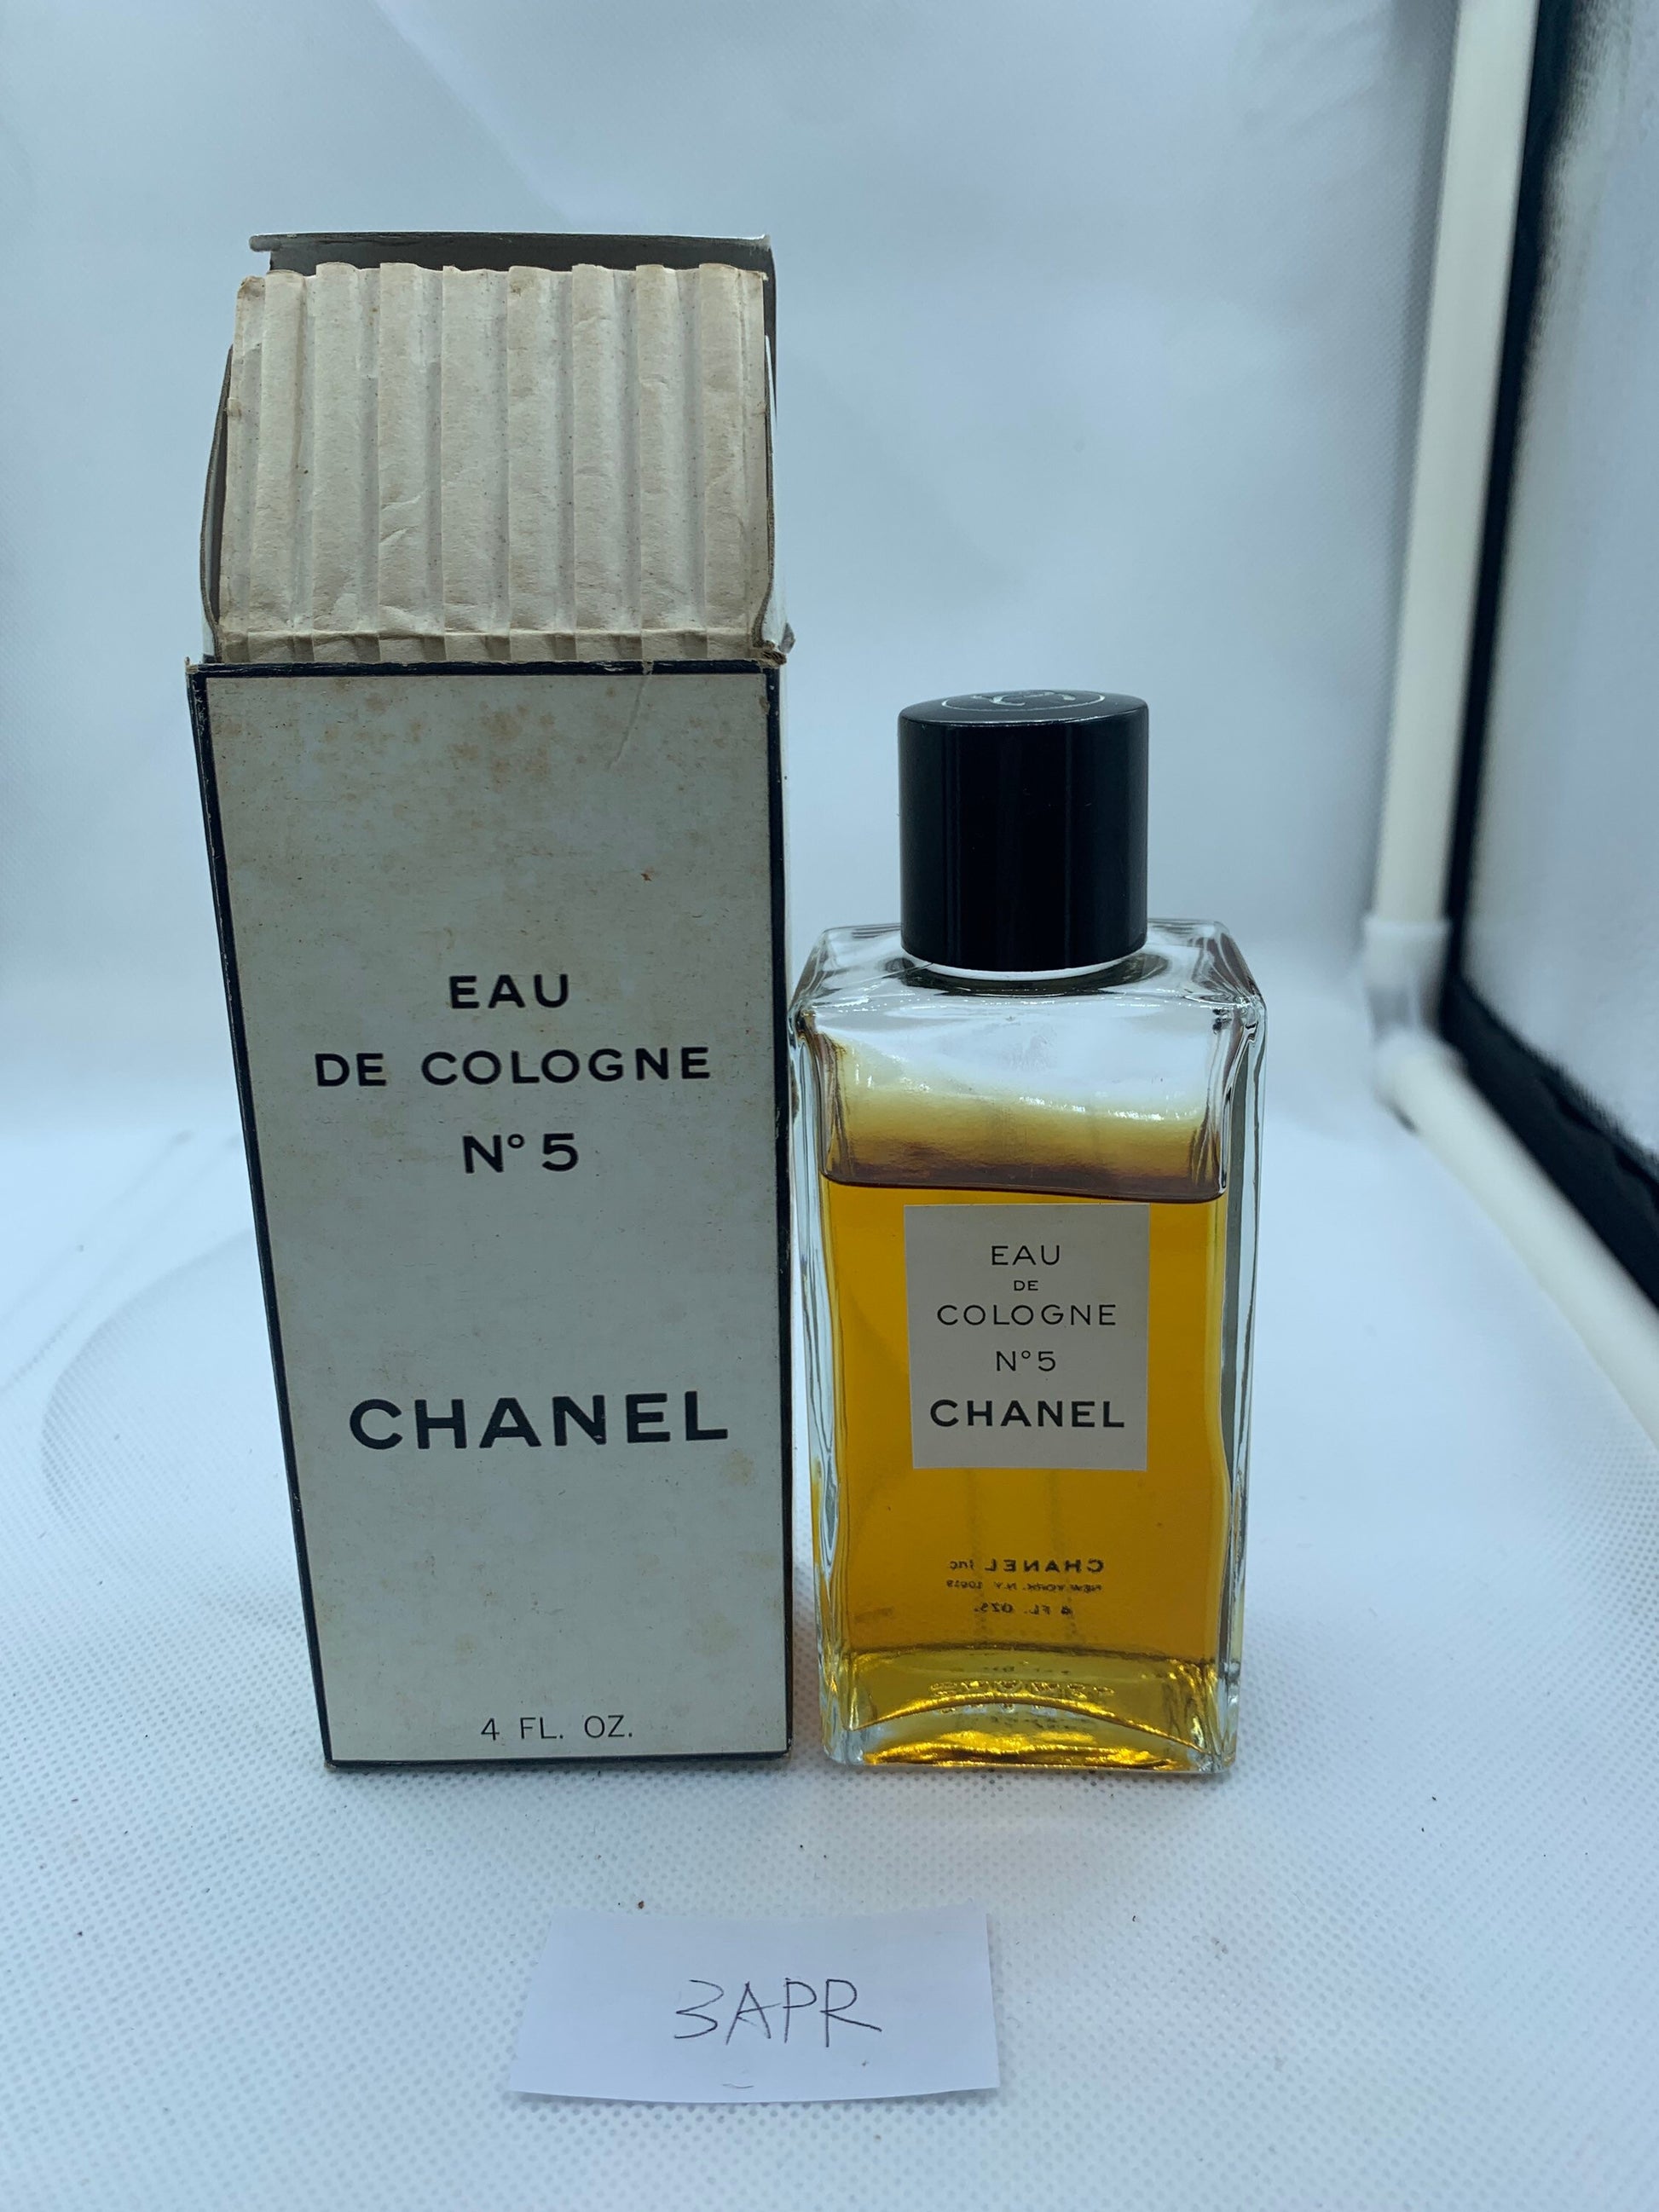 Free: RARE Vintage 1960s CHANEL No. 5 Eau de Toilette Paris Glass Perfume  Bottle Full..Original Box. - Fragrances -  Auctions for Free Stuff